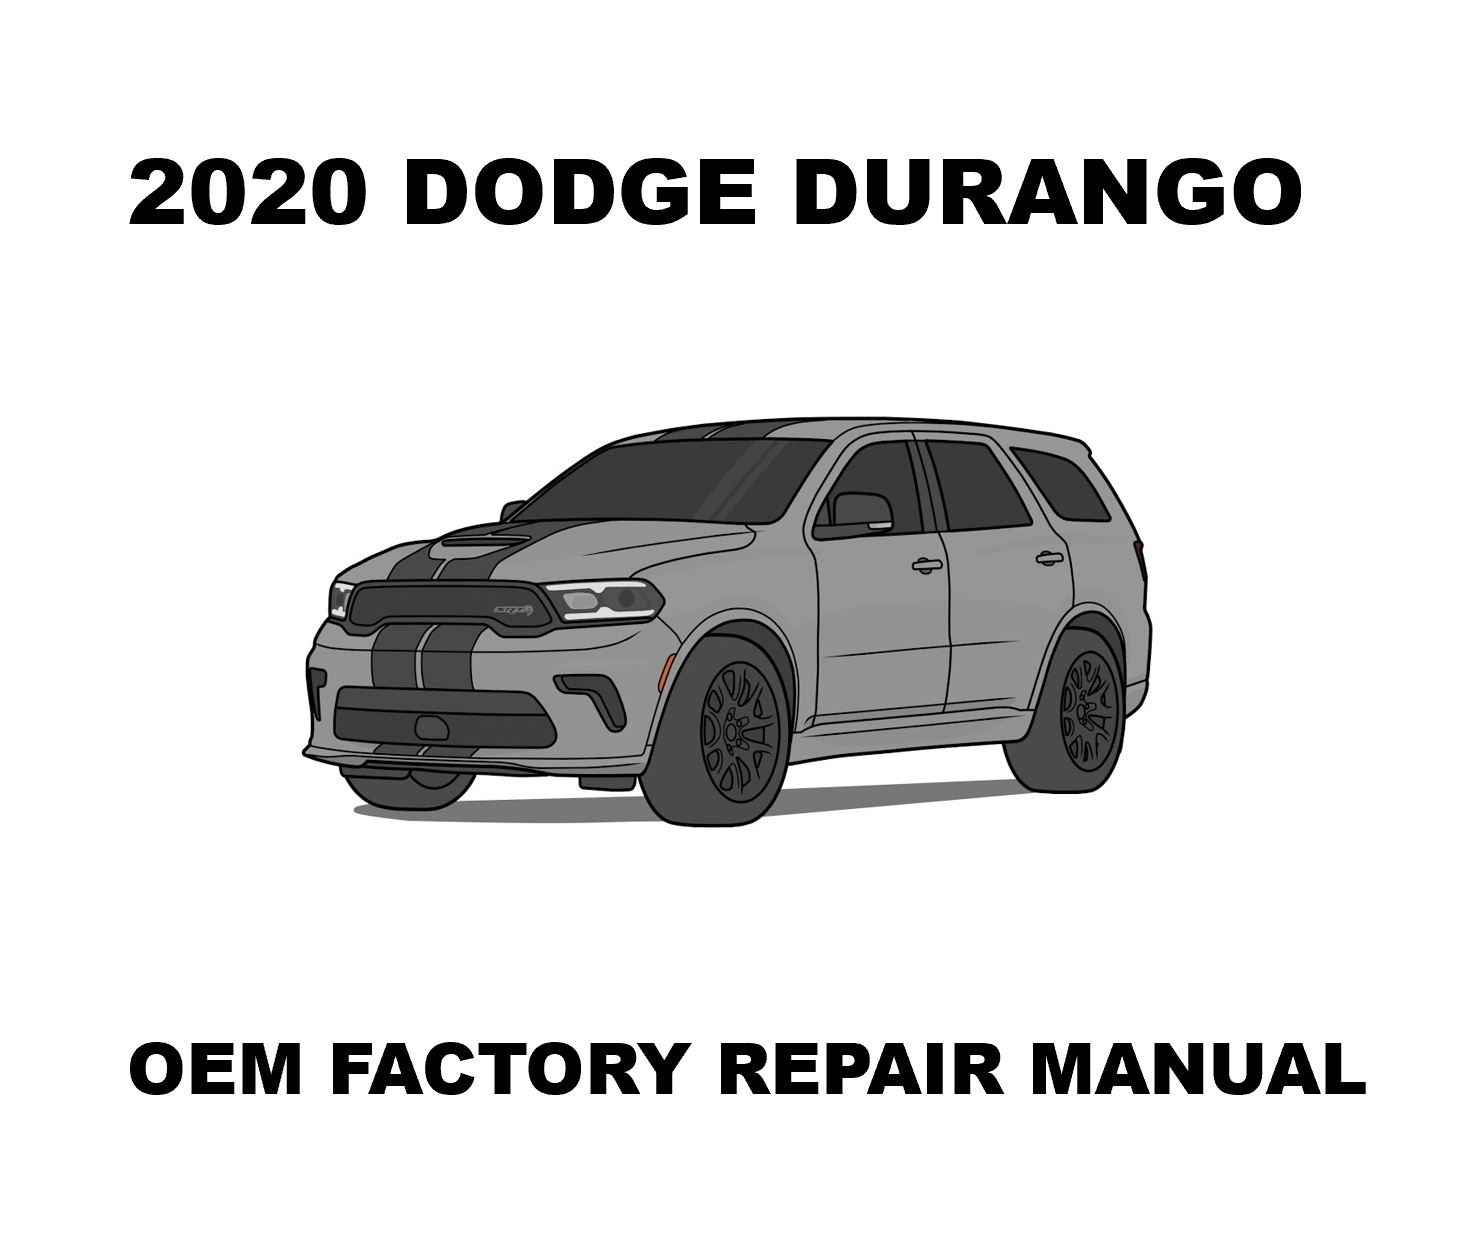 2020_dodge_durango_repair_manual_1472